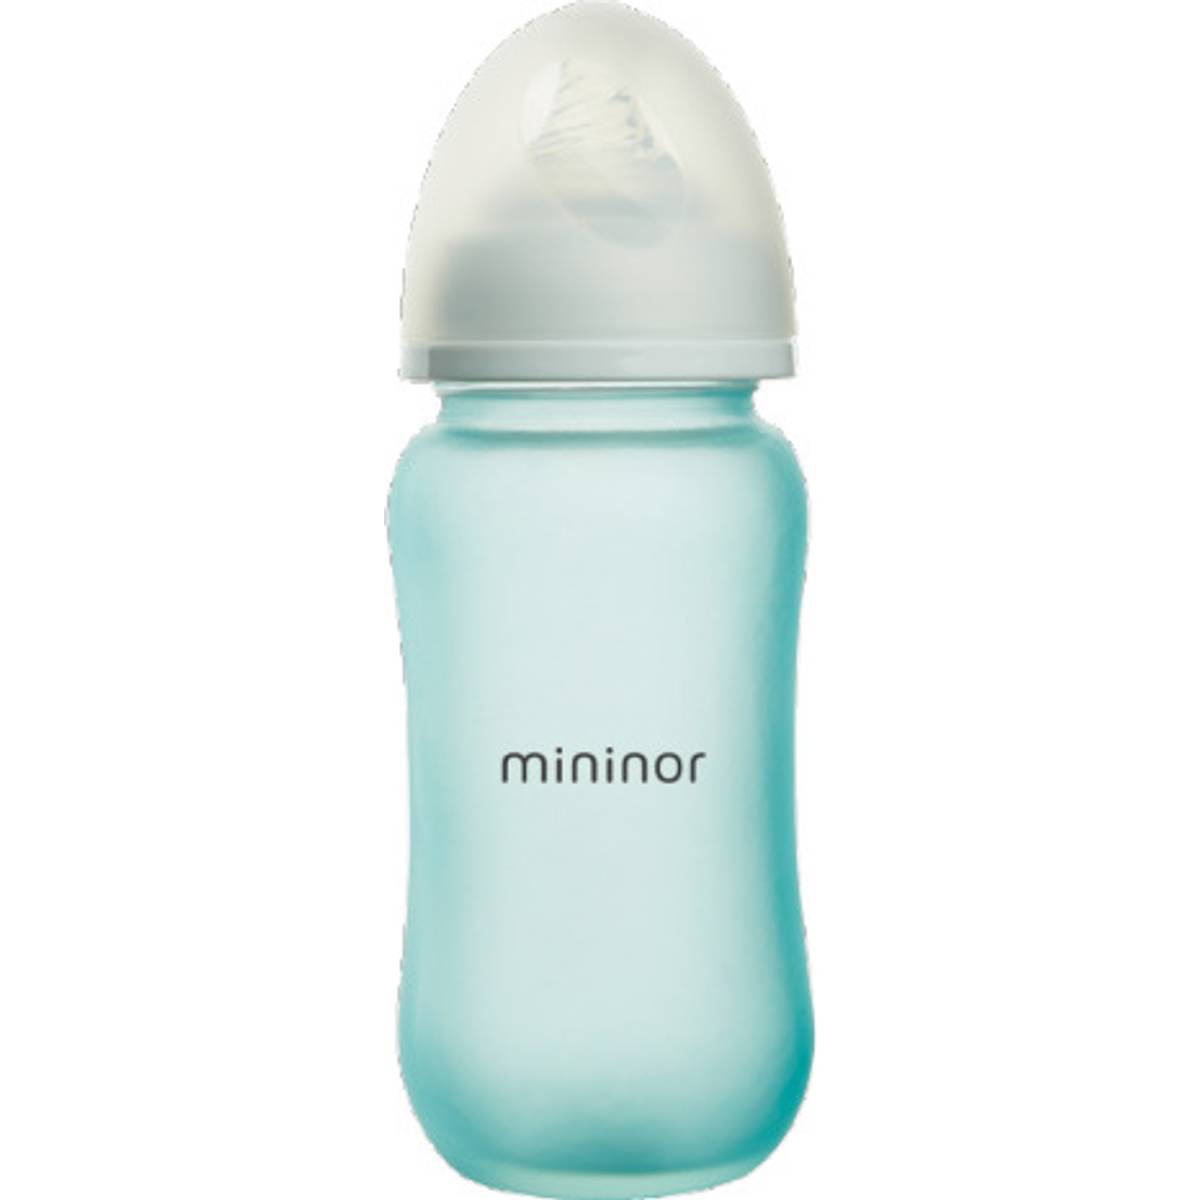 Mininor Sutteflaske (9 produkter) hos PriceRunner • Se priser nu »